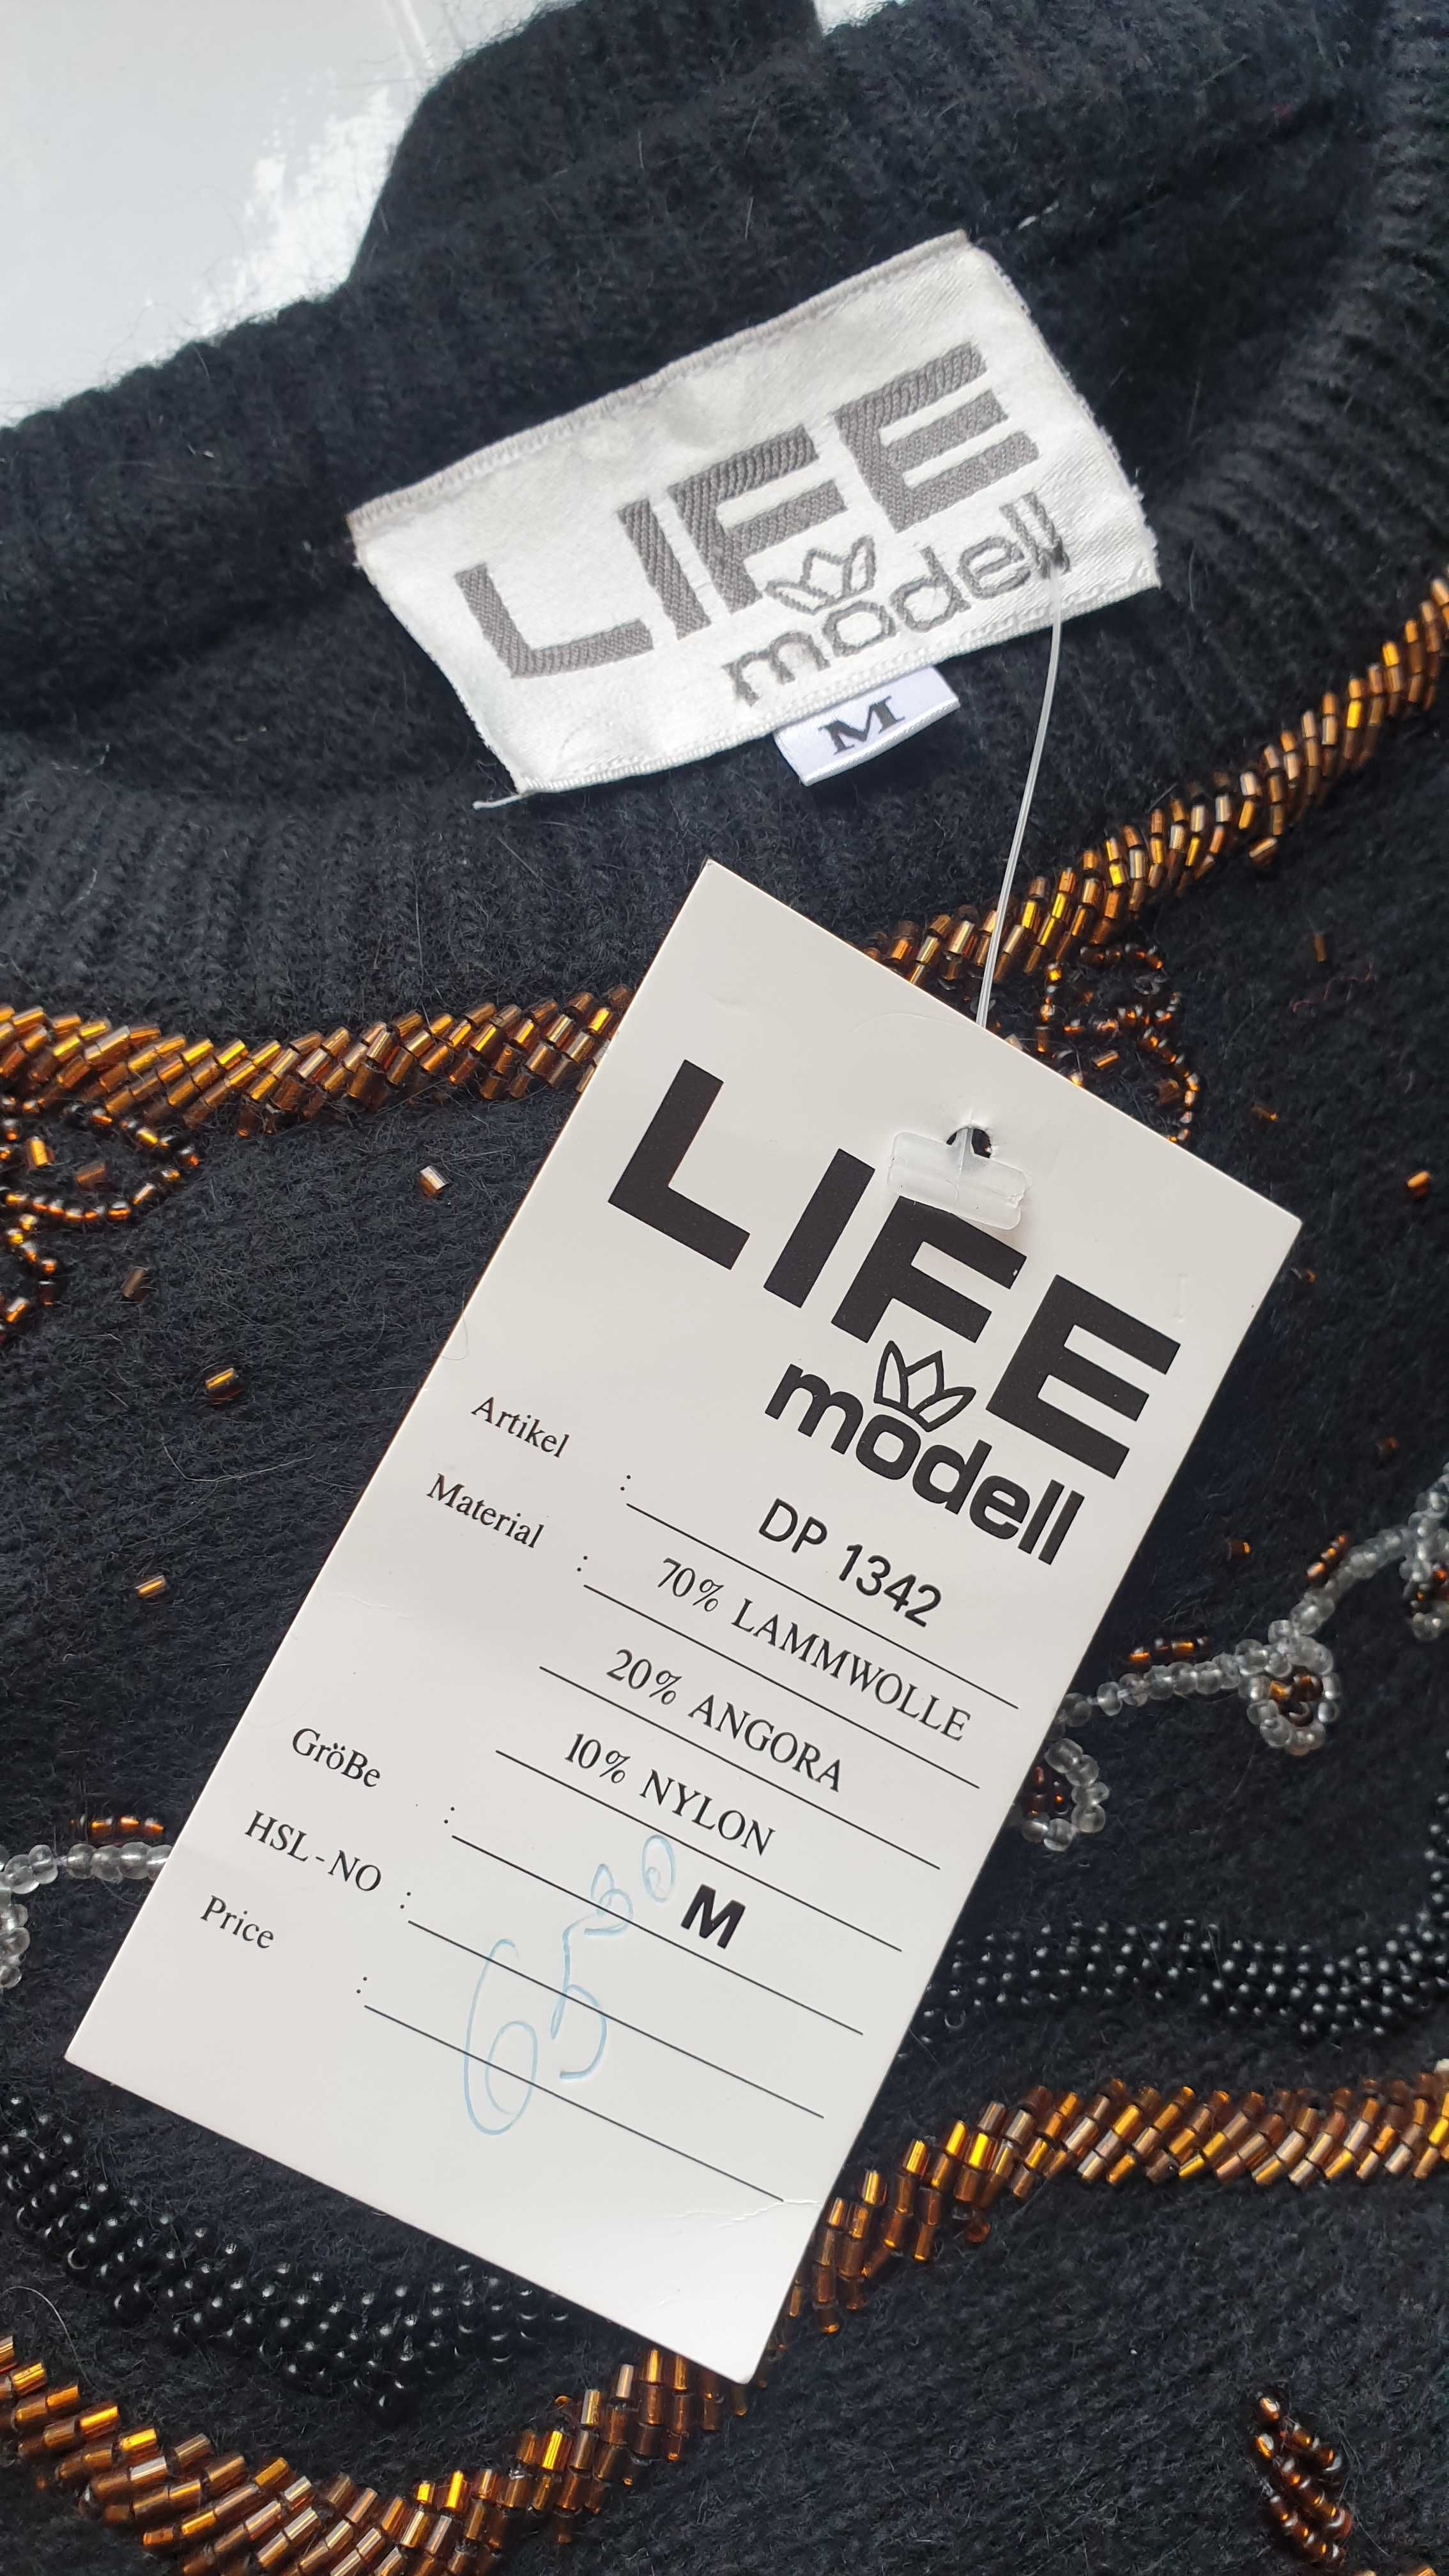 Жіночий светр вовна з паэтками оригінал 90ті Life Modell Німеччина